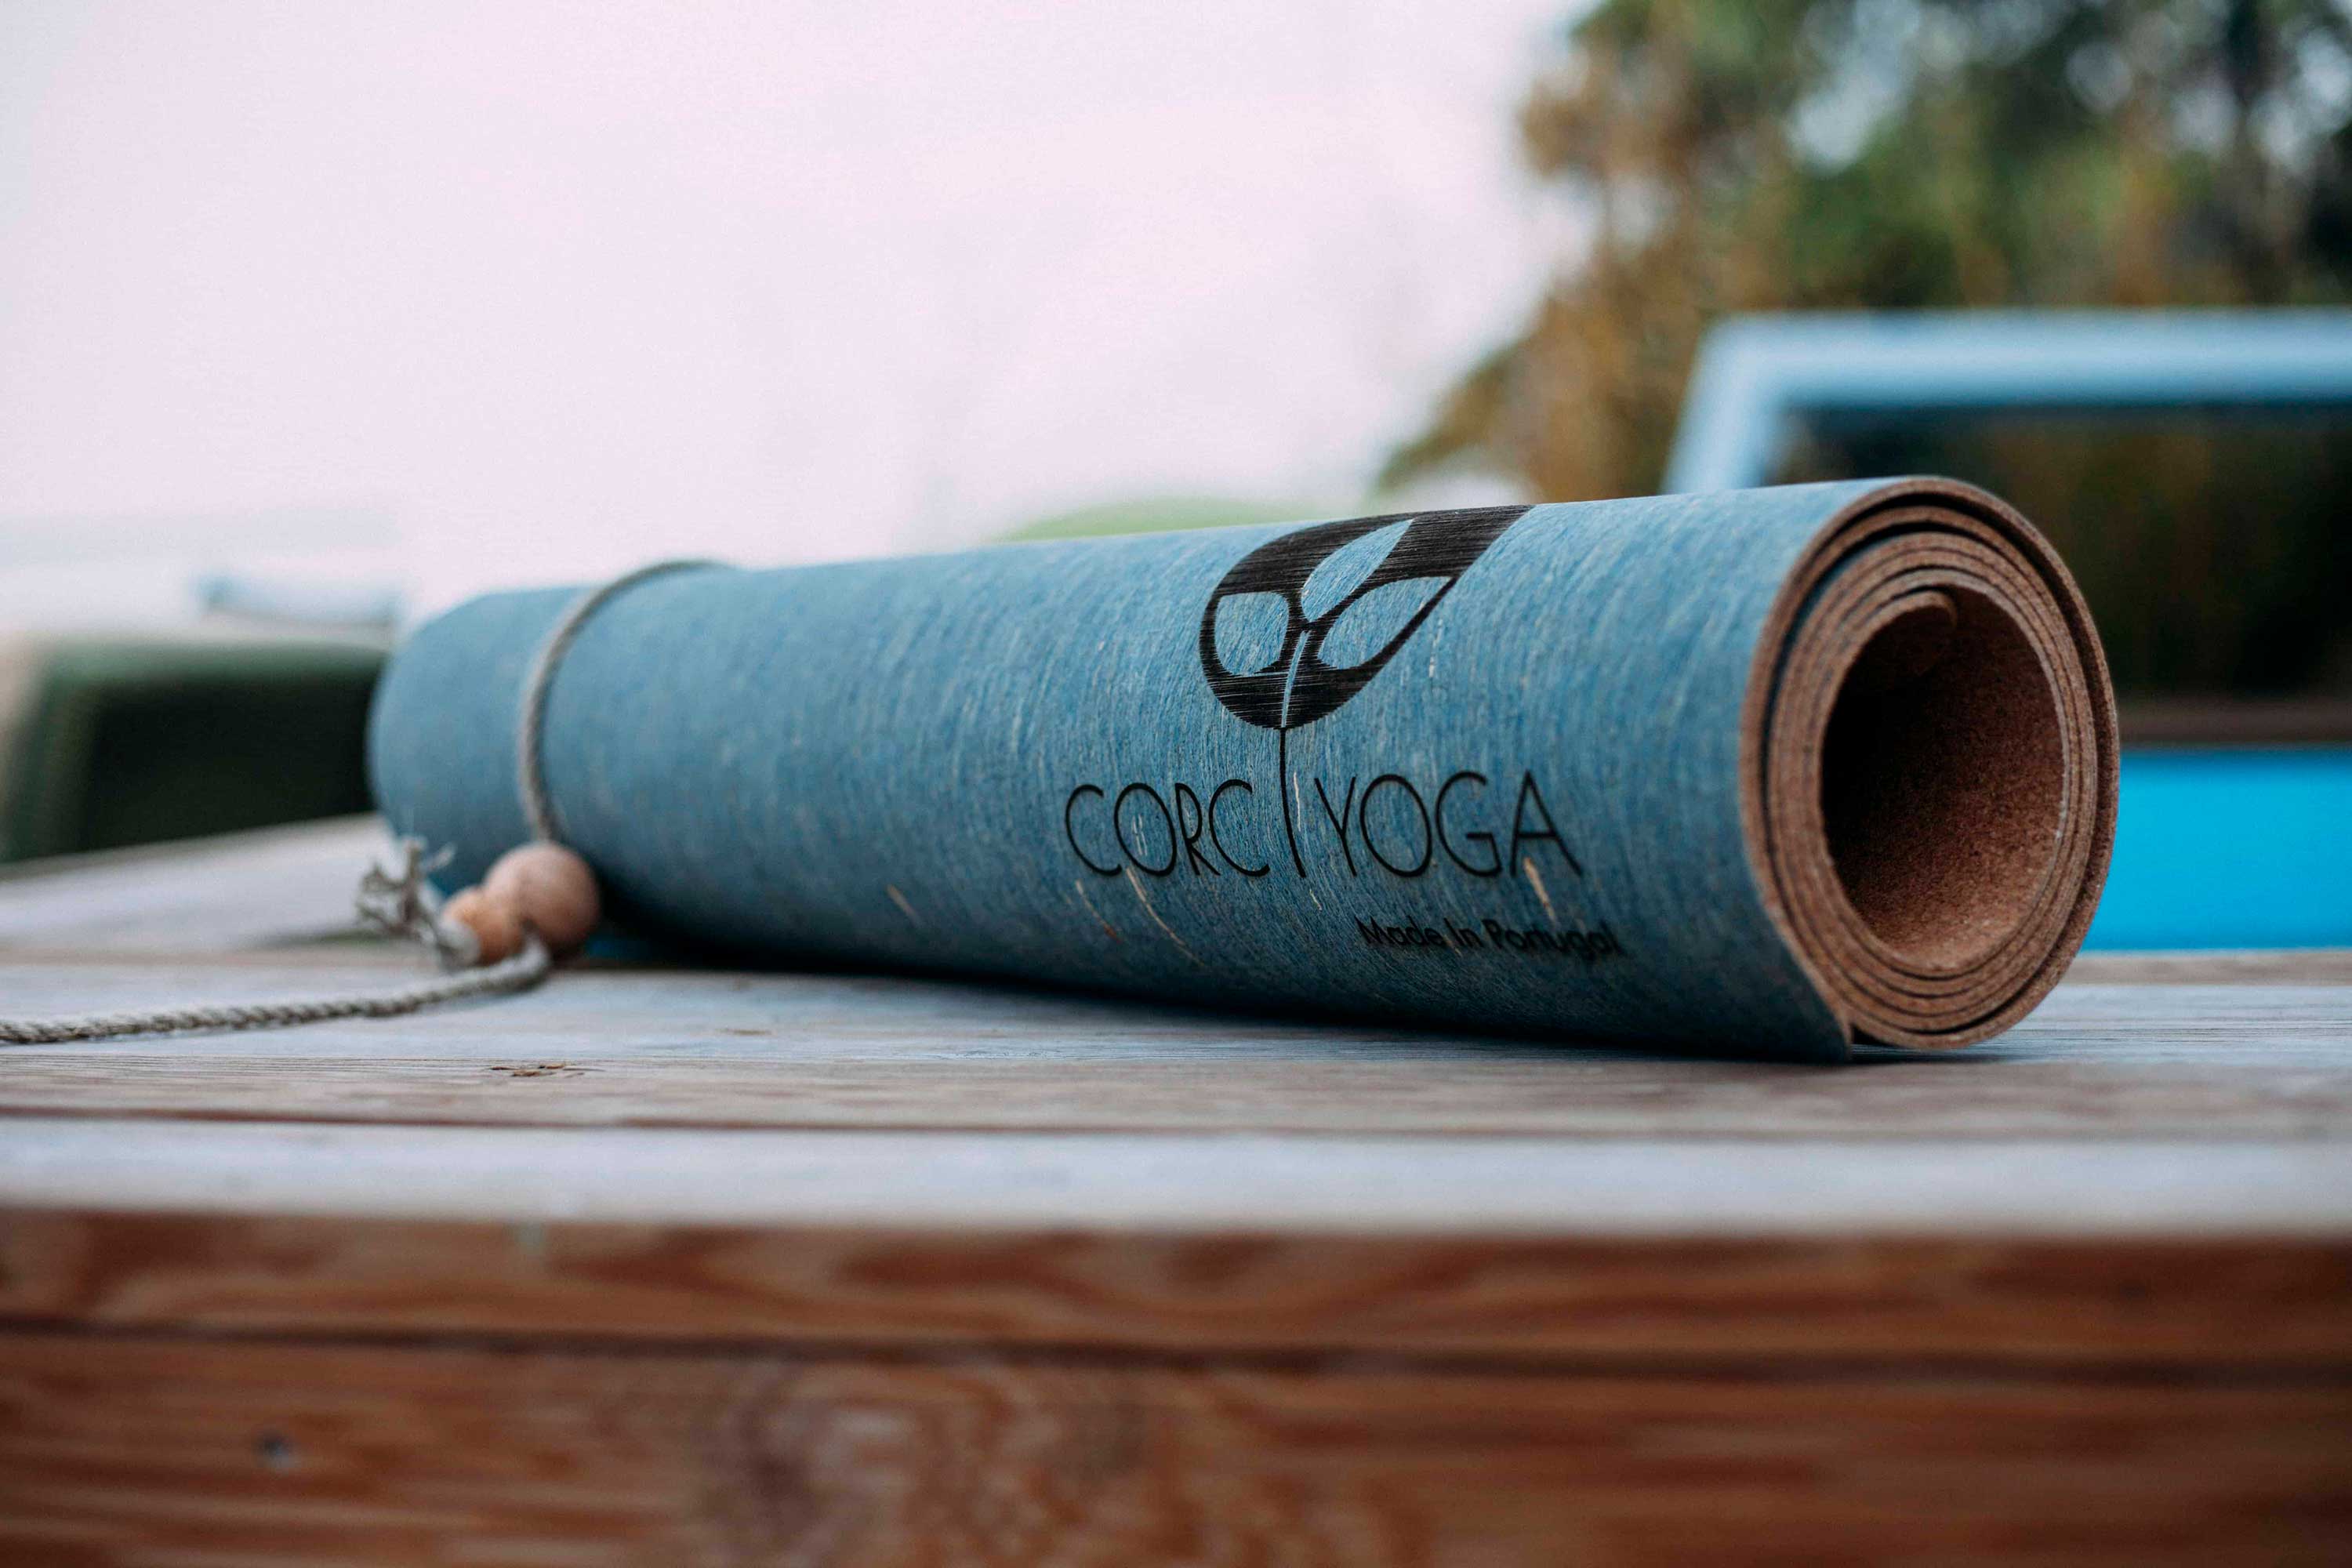 RENEW : Alentejo : Cork Yoga Mat - Corc Yoga